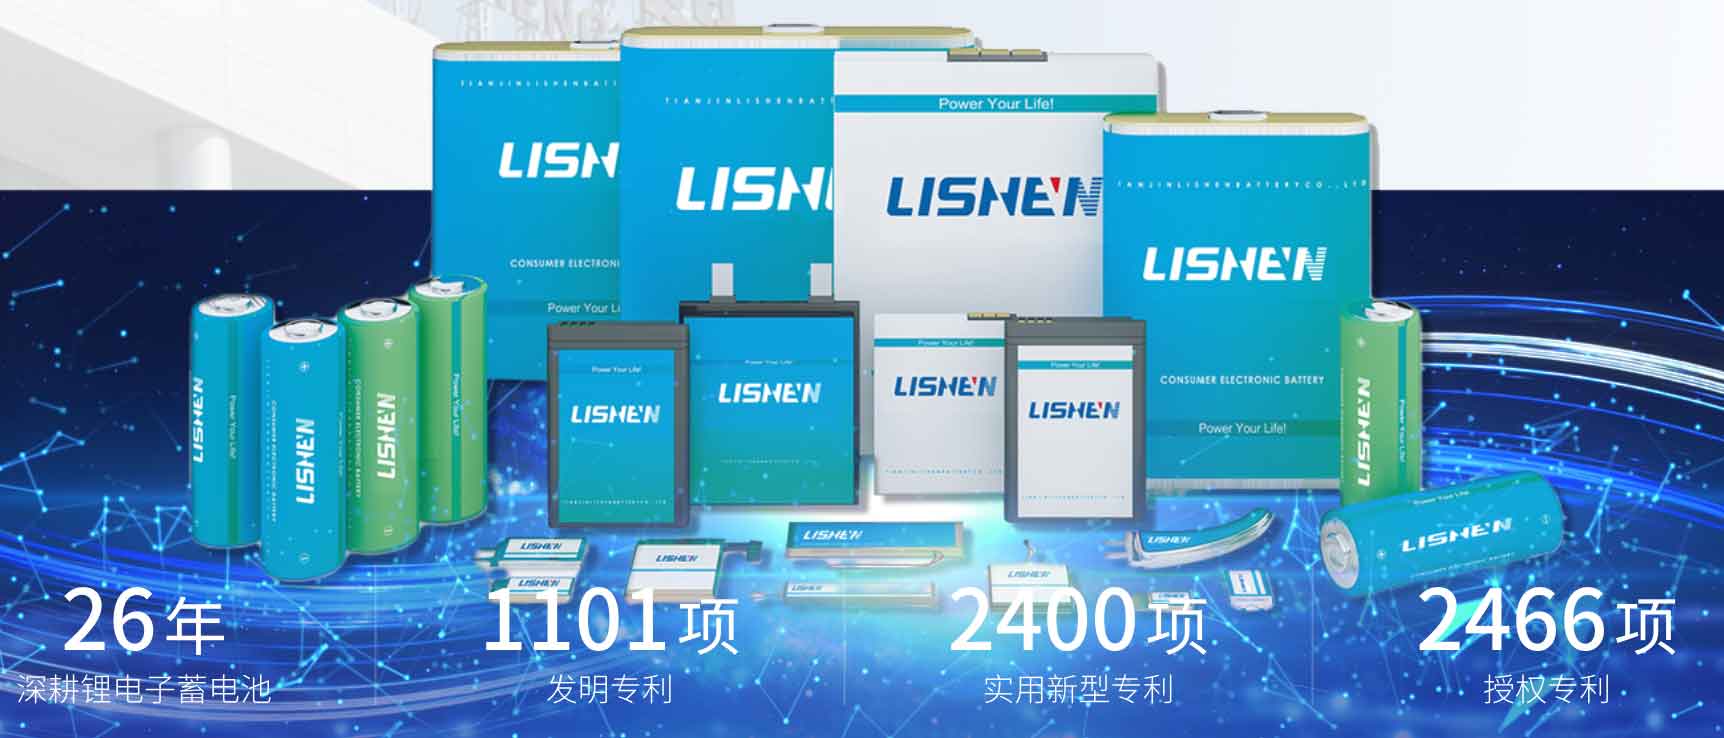 lishen-battery-cell.jpg